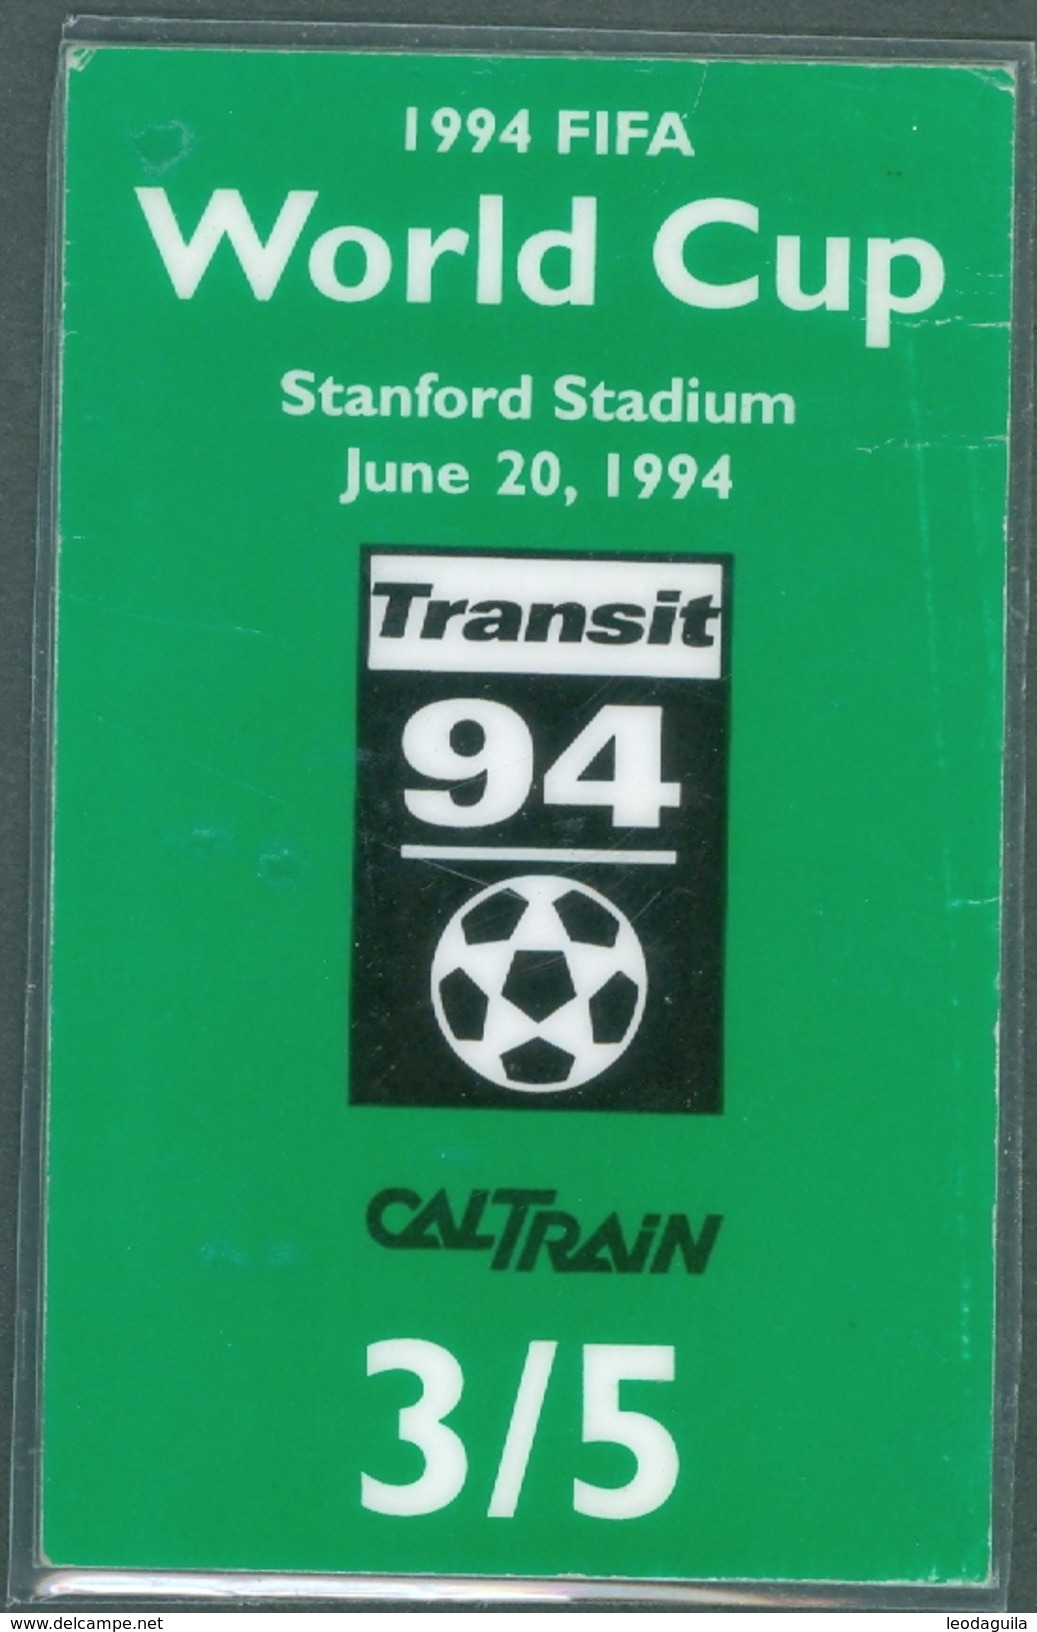 RAILWAY TICKET  -   CALTRAIN TICKET TO STANFORD STADIUM - USA  - FIFA WORLD CUP 1994 - Monde